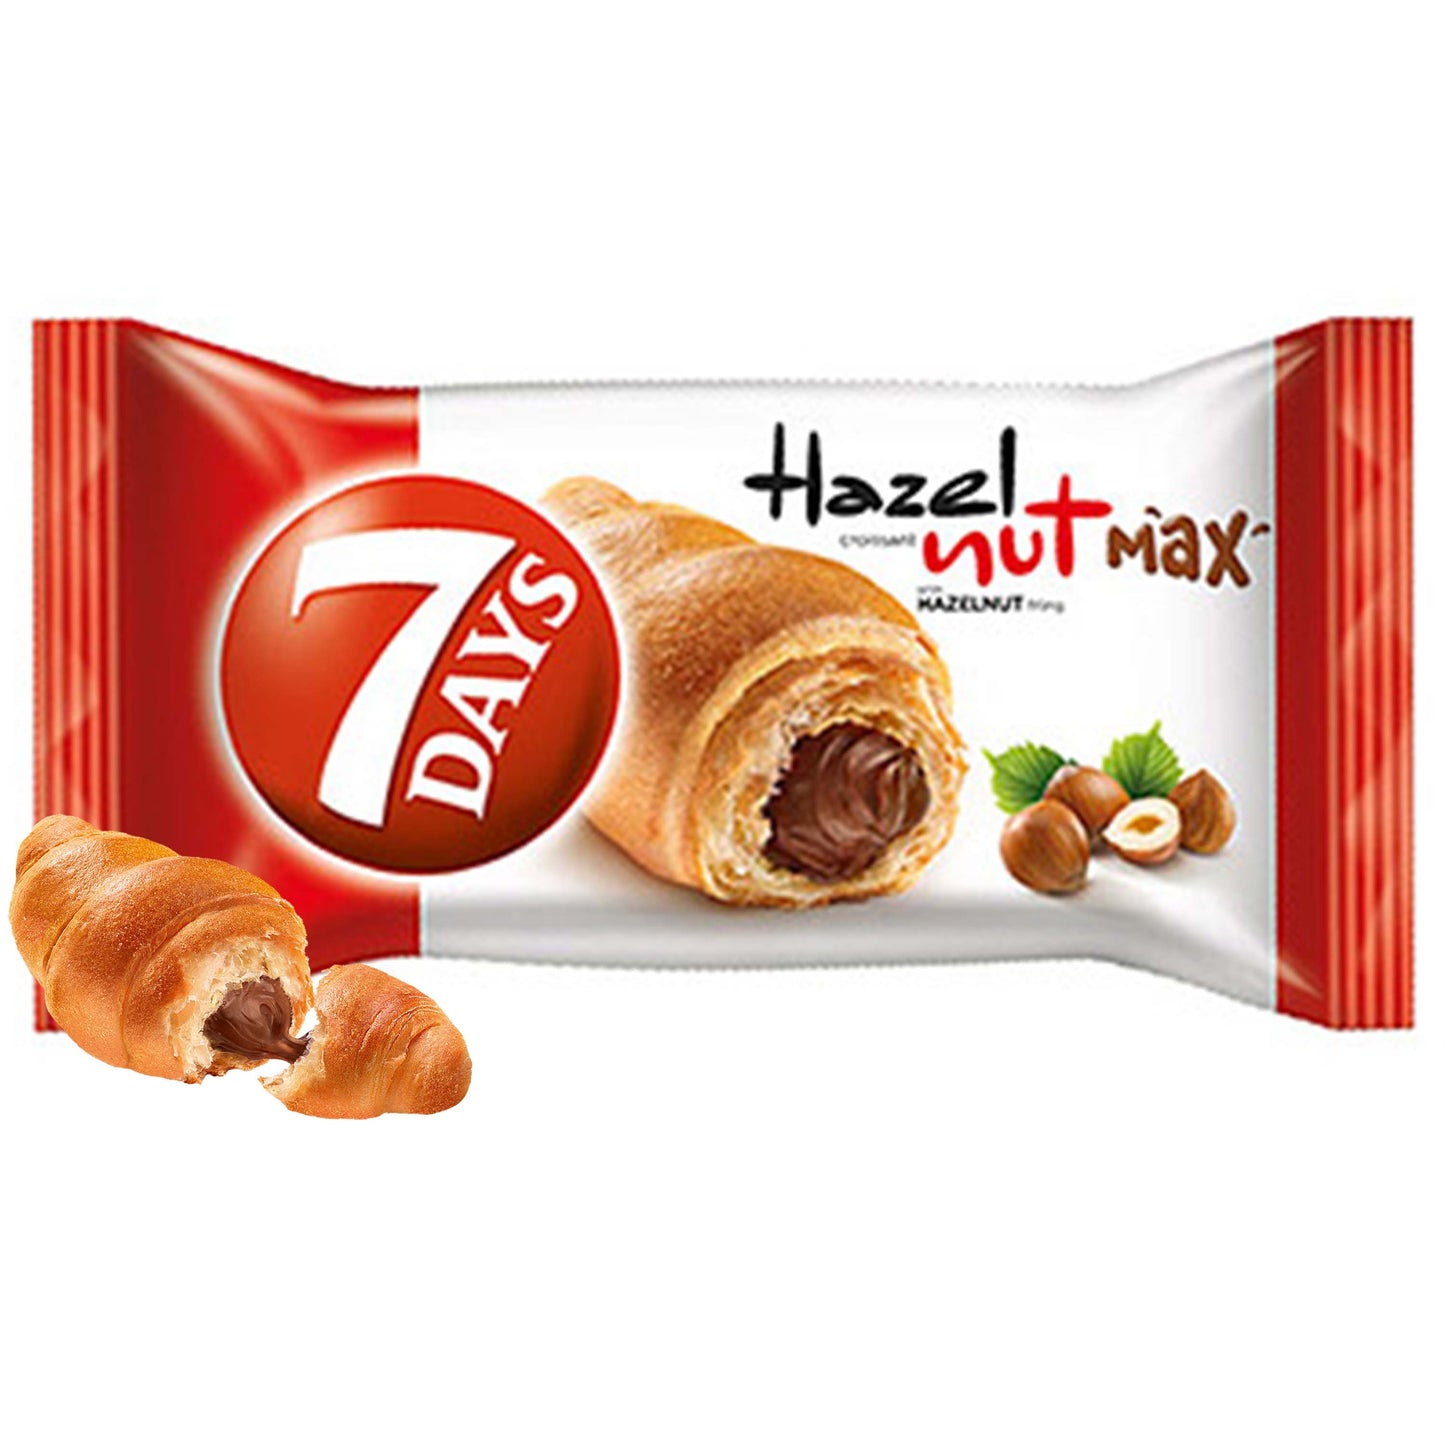 7 Days Croissant Hazelnut Max - 80g - SNACKS